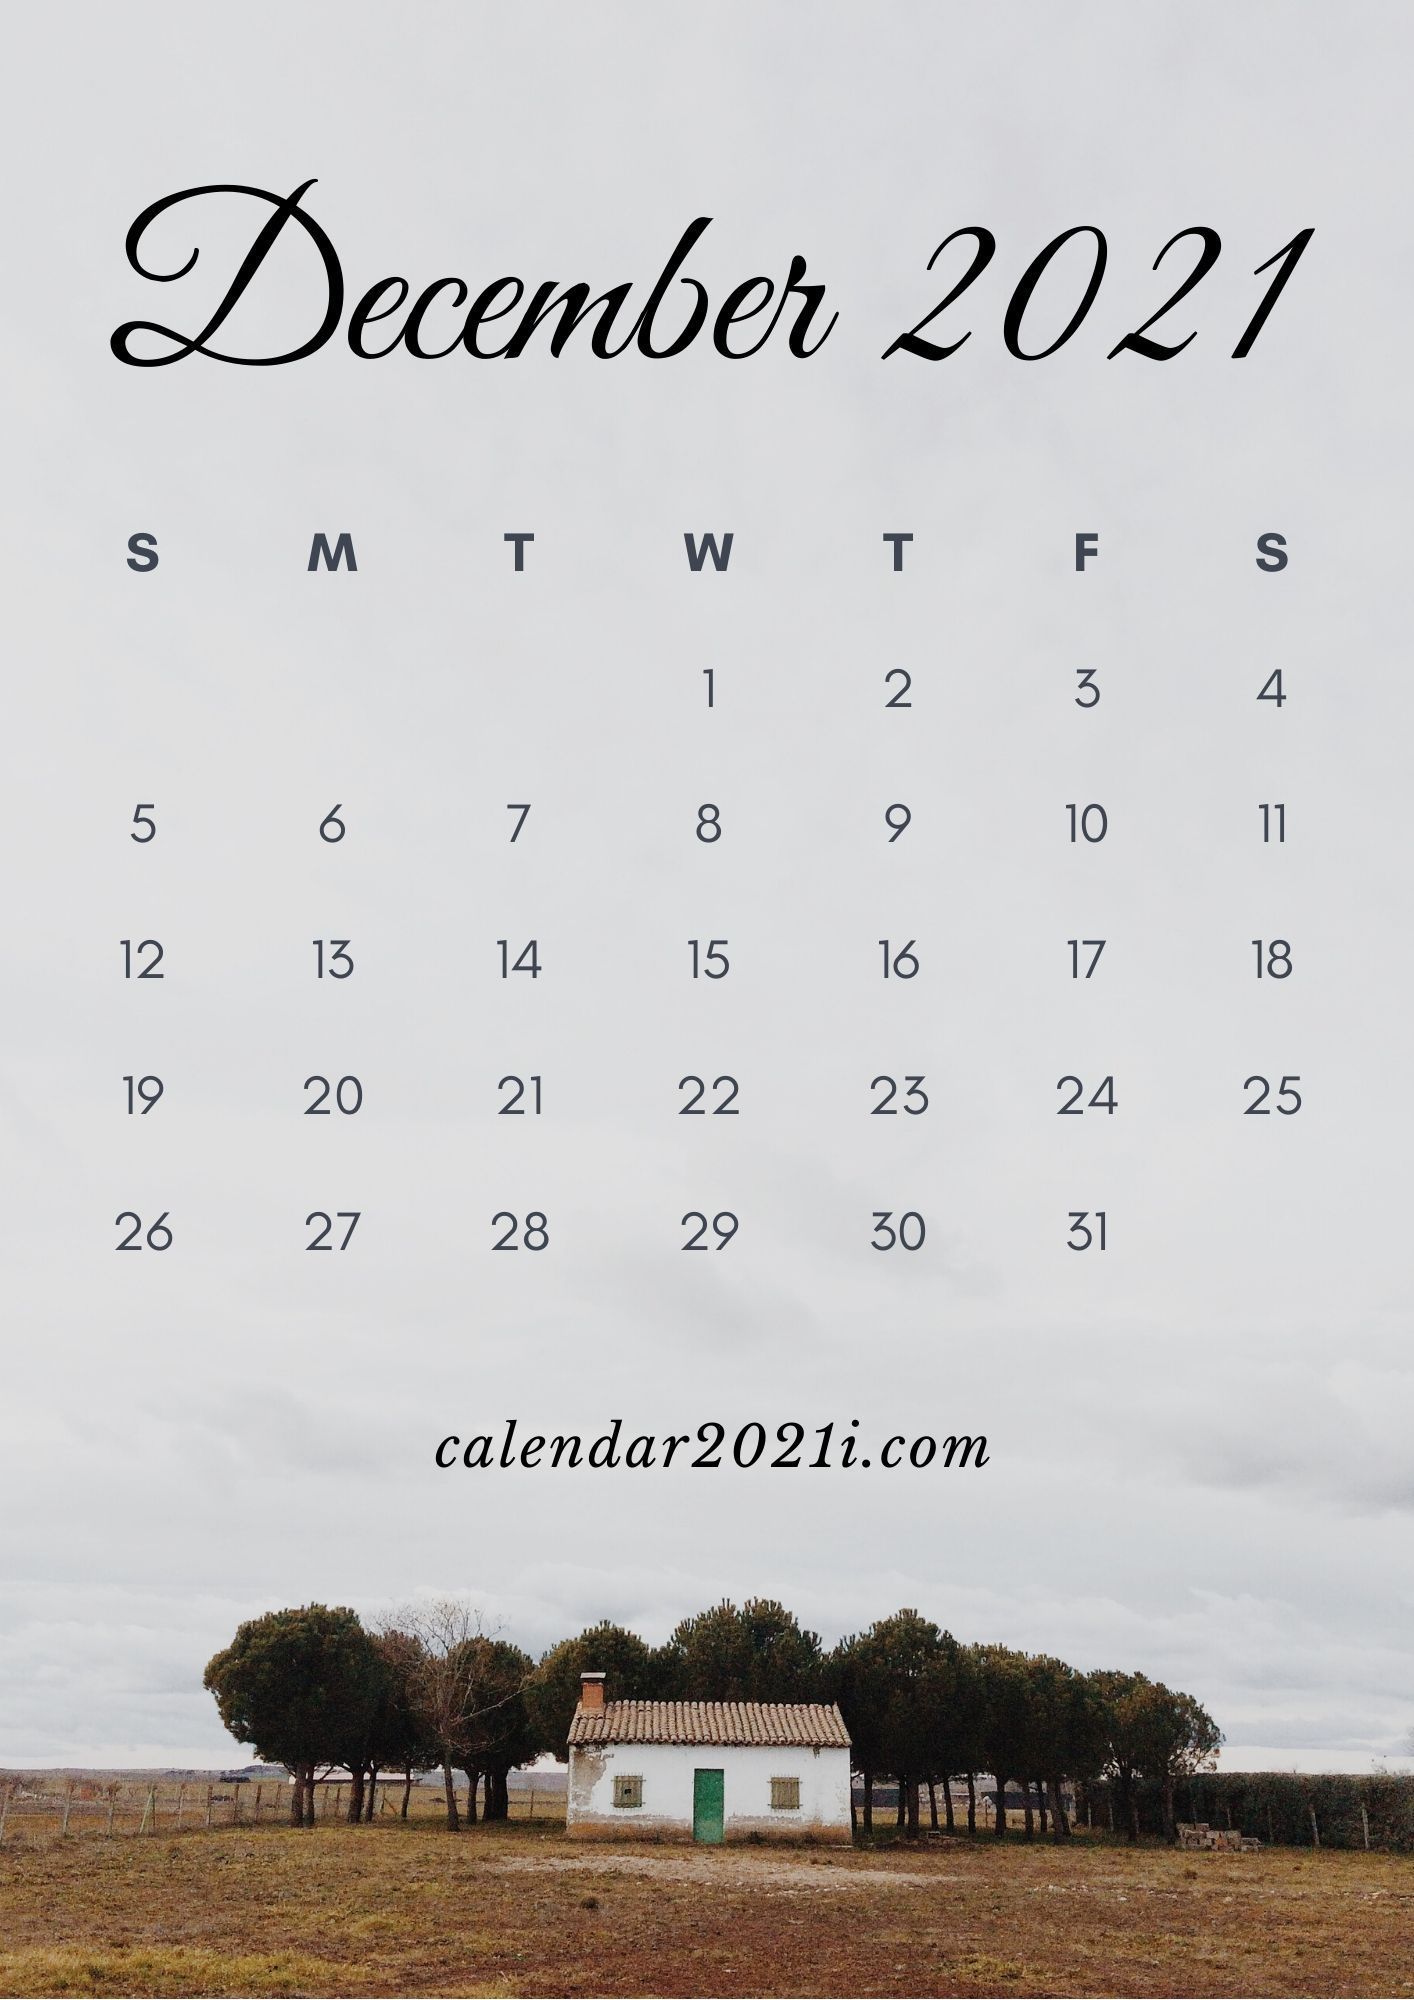 December 2021 Calendar iPhone Wallpaper in High Definition. Calendar wallpaper, 2021 calendar, Free printable calendar